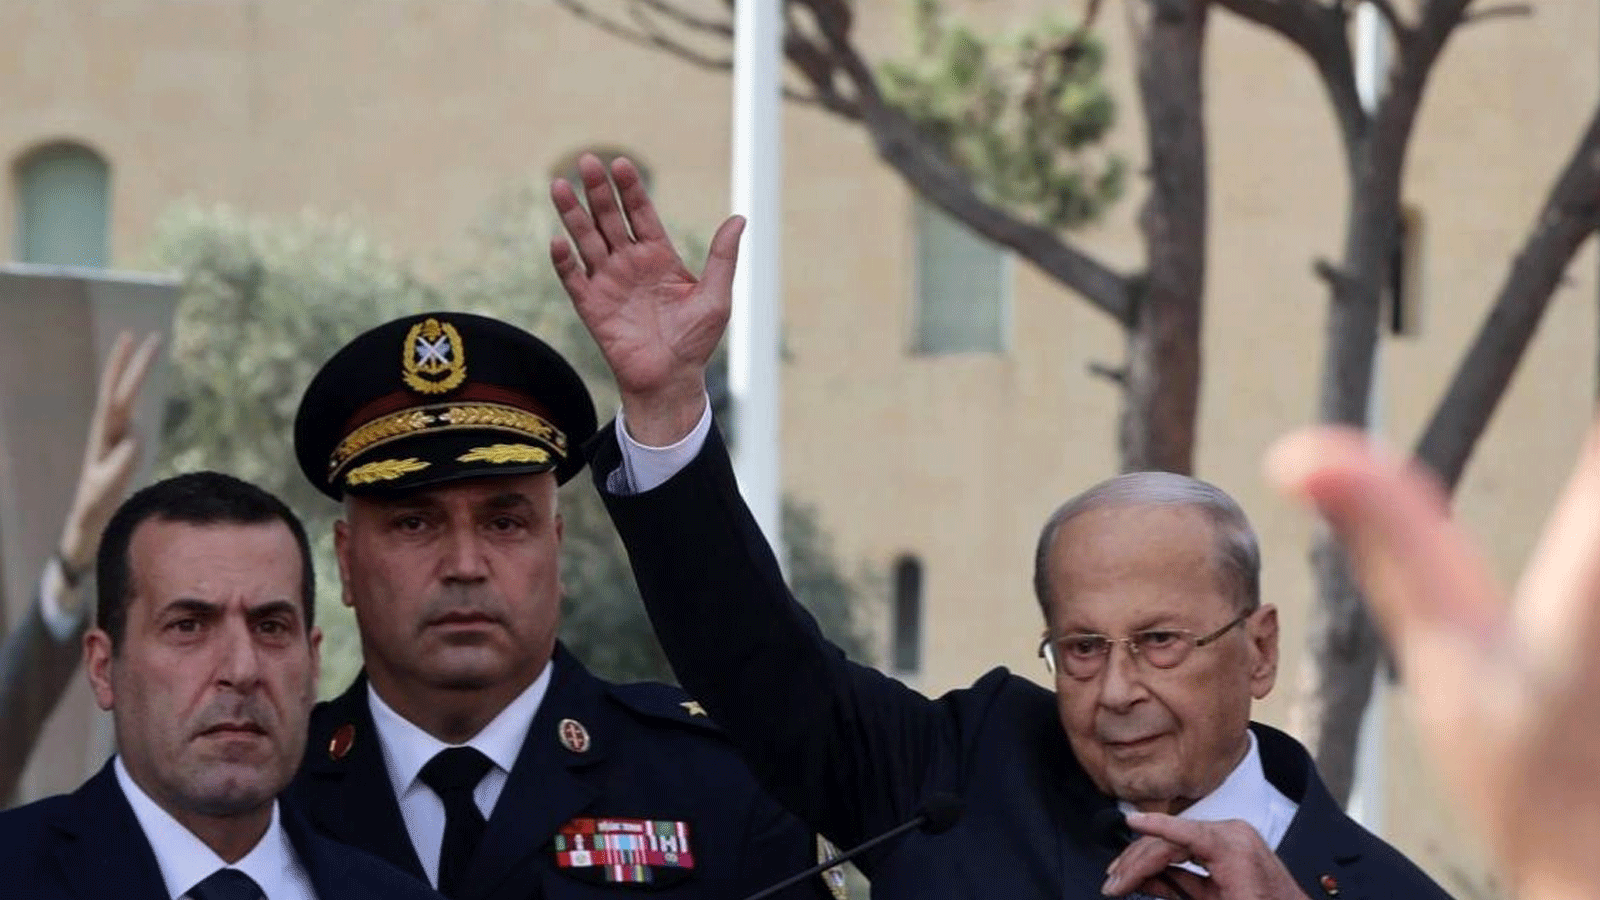 الرئيس اللبناني ميشال عون يلوح لمؤيديه أمام القصر الجمهوري في بعبدا قبل أن يلقي كلمة بمناسبة انتهاء ولايته شرق العاصمة بيروت في 30 تشرين الأول\أكتوبر 2022.